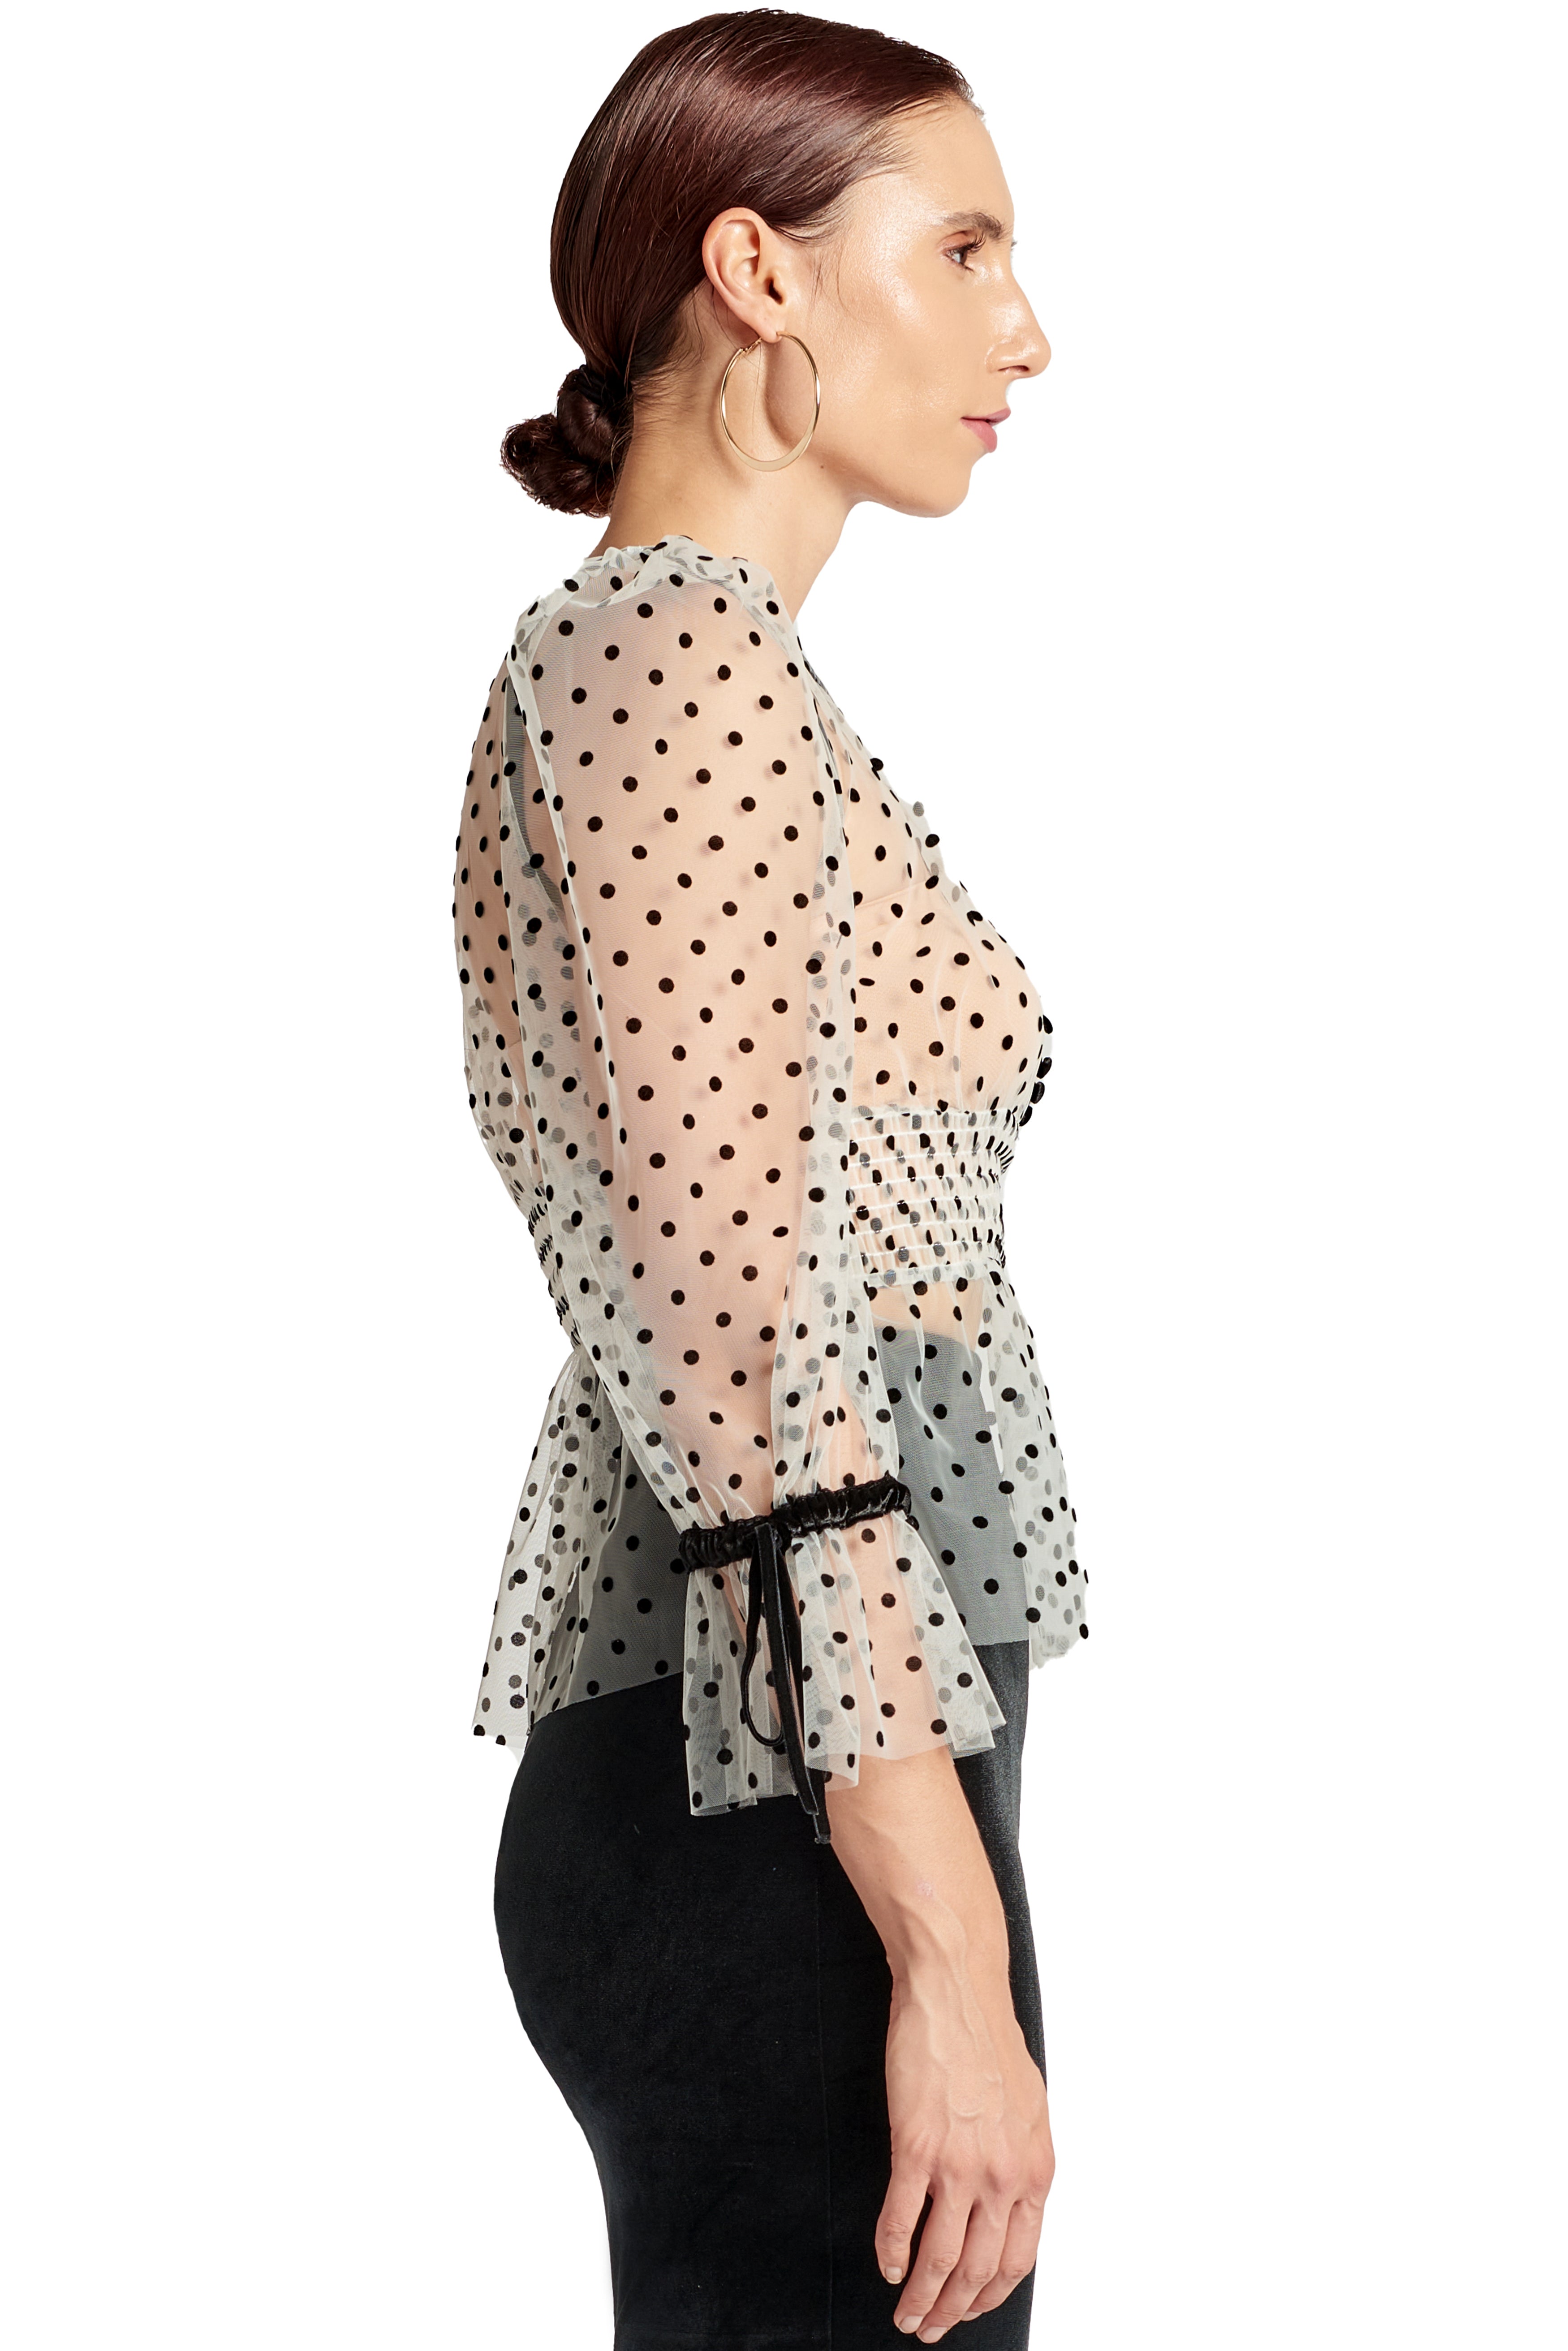 Side view of model wearing the Simona Maghen J'lene Top, white mesh black polka dot 3/4 puff sleeve peplum hem v-neck top with black velvet buttons and bows.